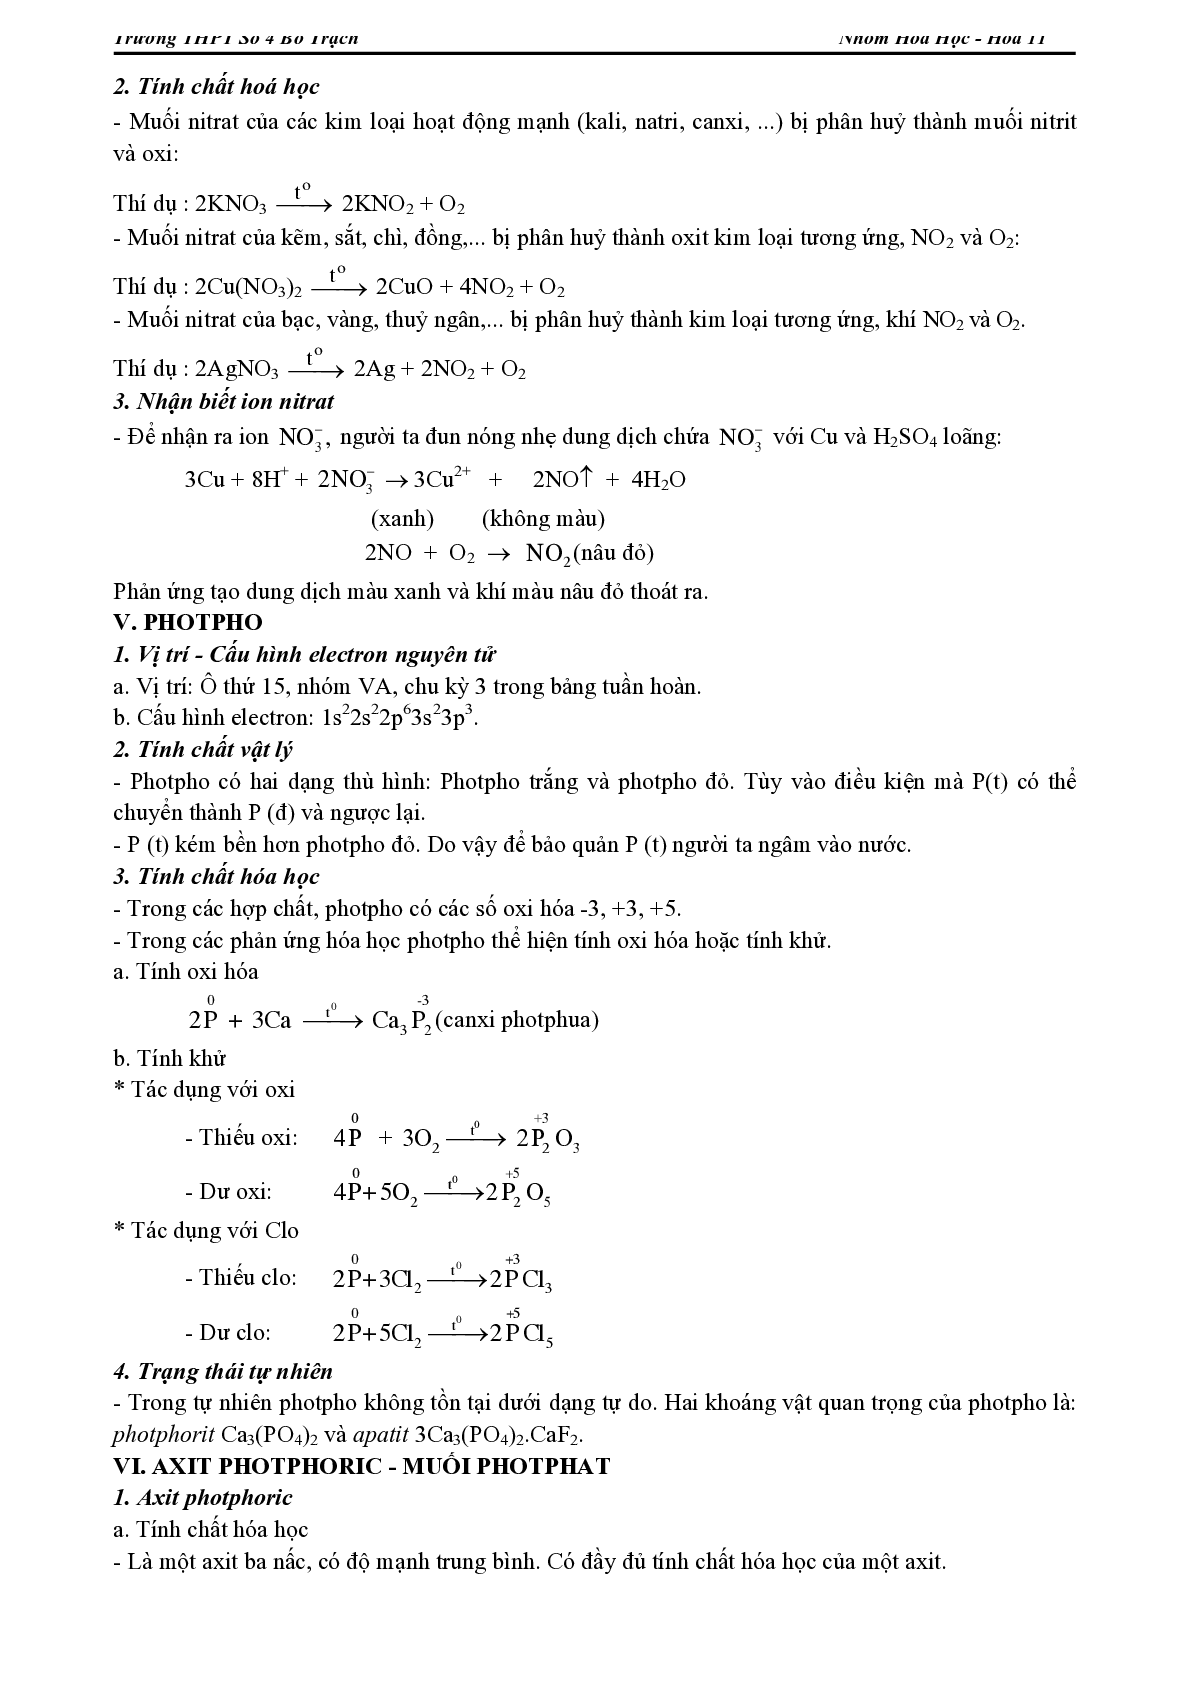 Lý thuyết, bài tập về Chương trình Hóa học lớp 11 có đáp án (trang 9)